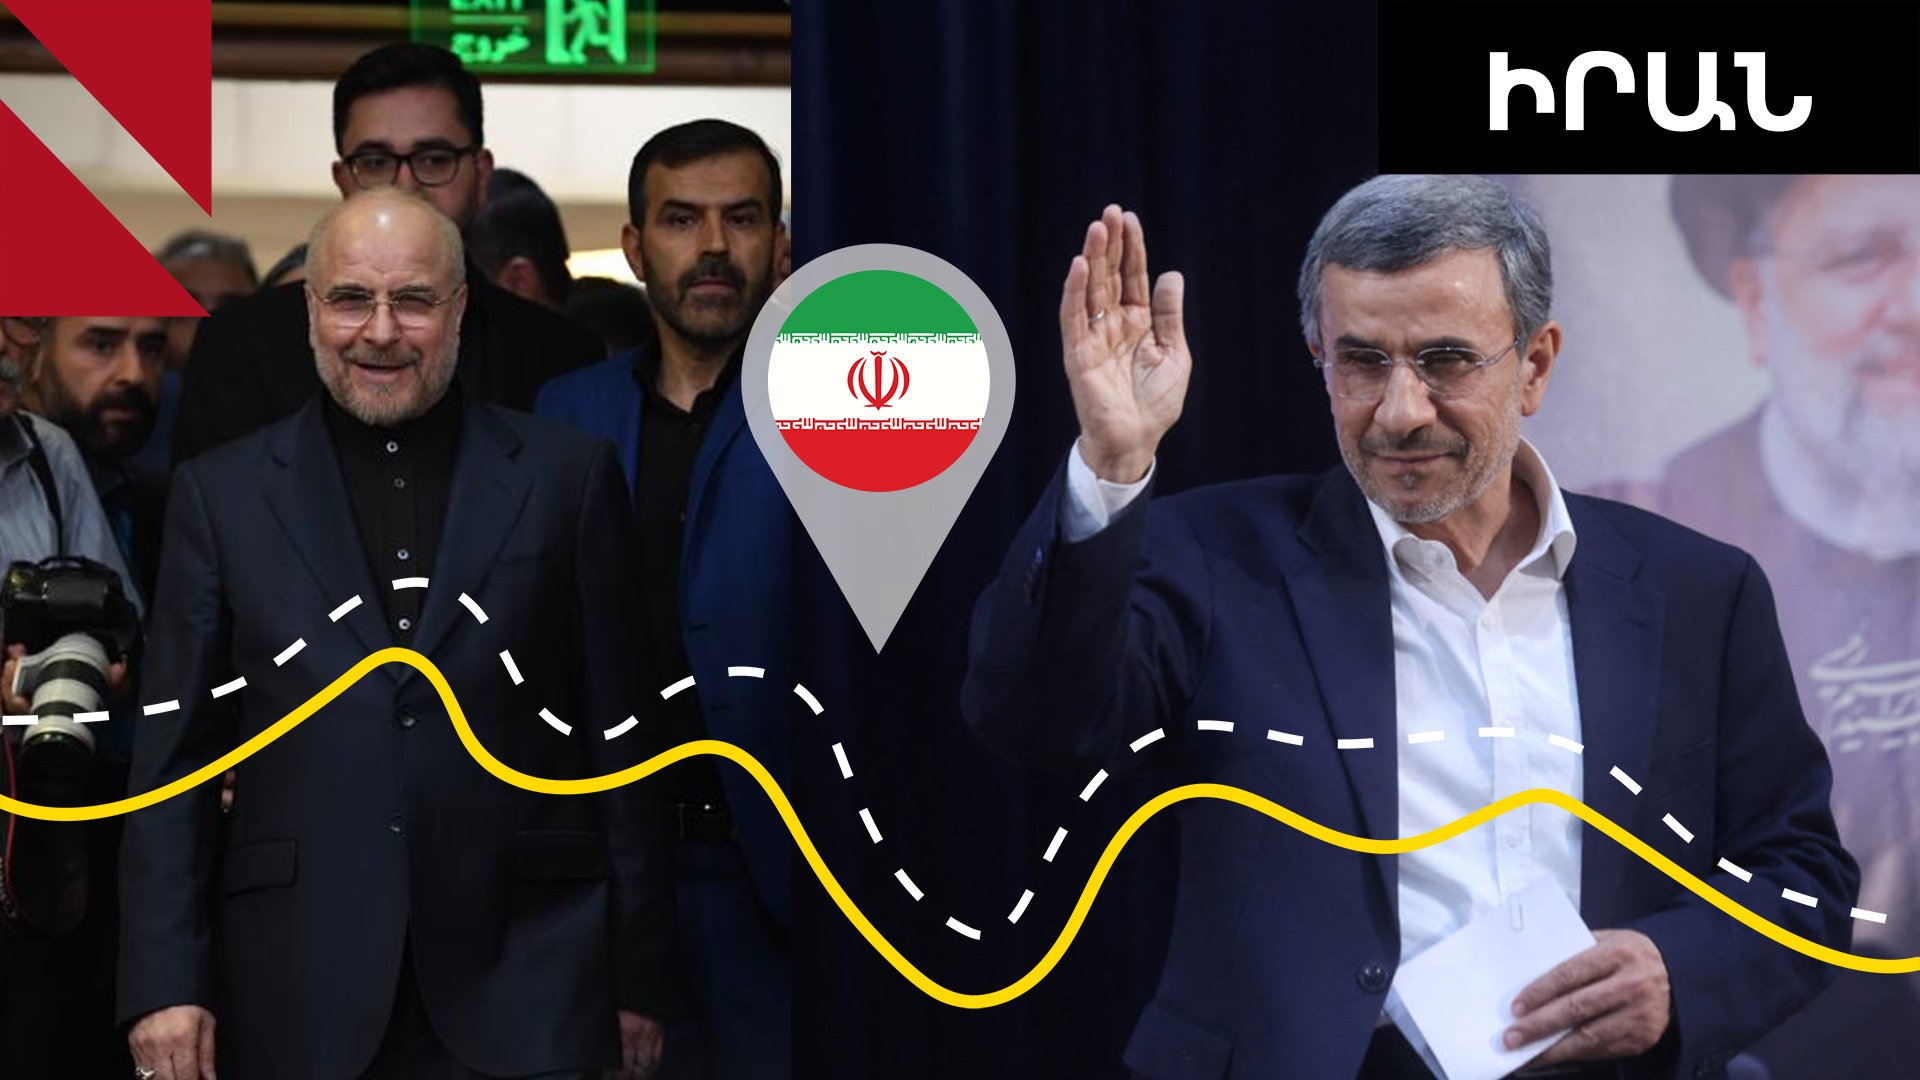 Ովքե՞ր են հավակնում Իրանի նախագահի պաշտոնին․ մրցապայքարը մեկնարկել է